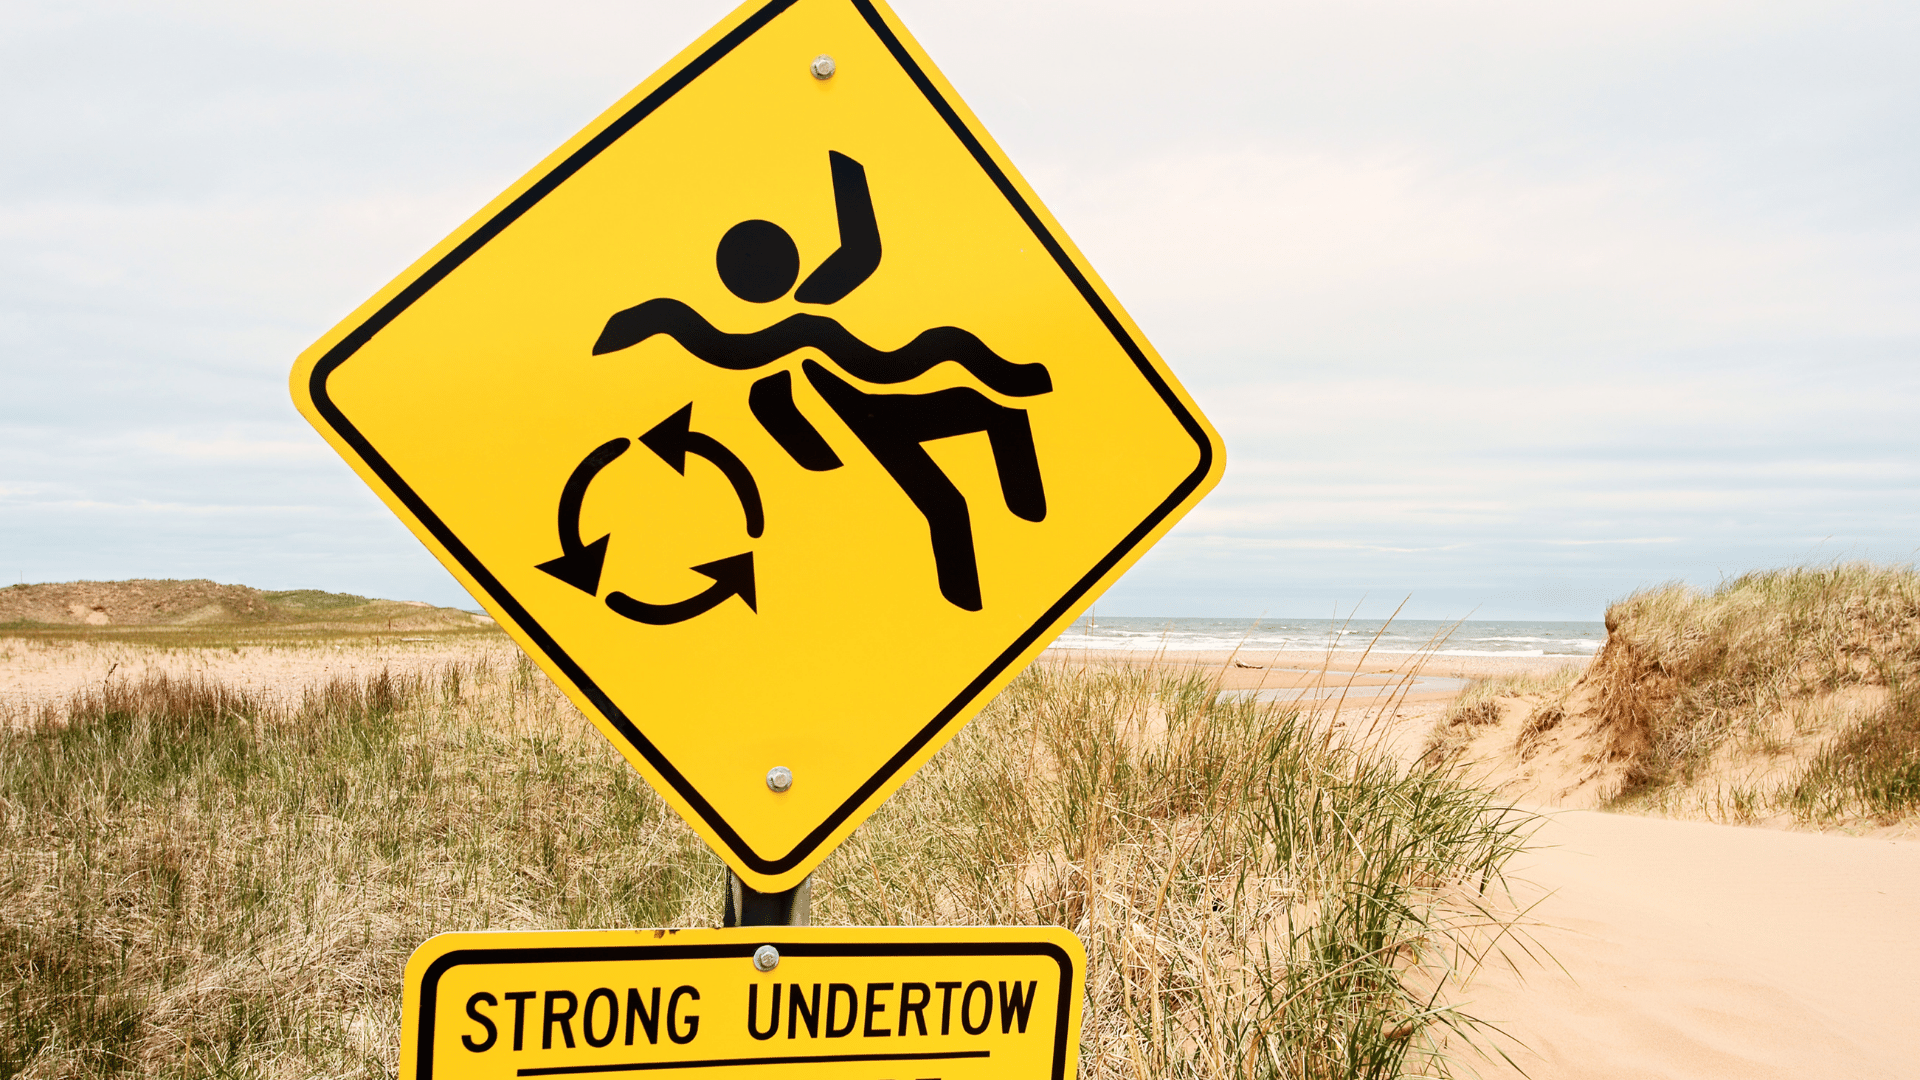 Undertow - Strömungen beim Surfen